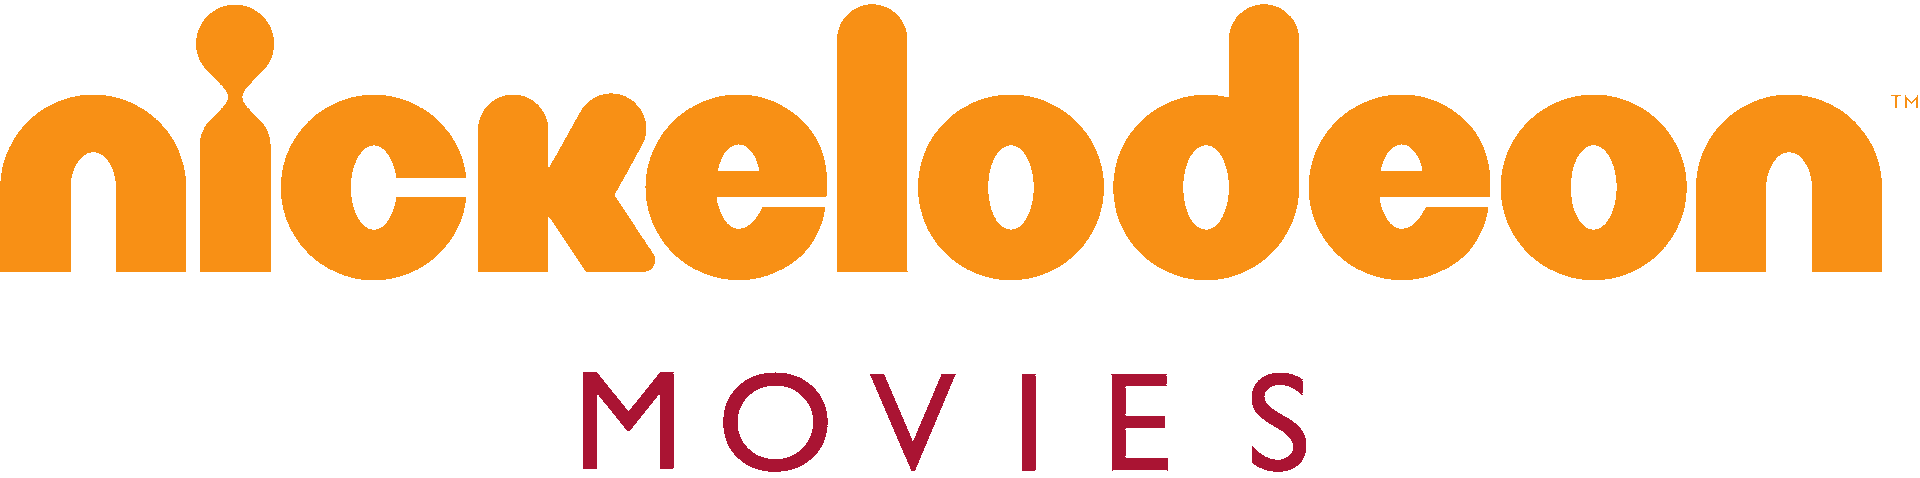 New Nickelodeon Logo - Nickelodeon Movies Logo.png. New Adam's CLG Wiki: Dream